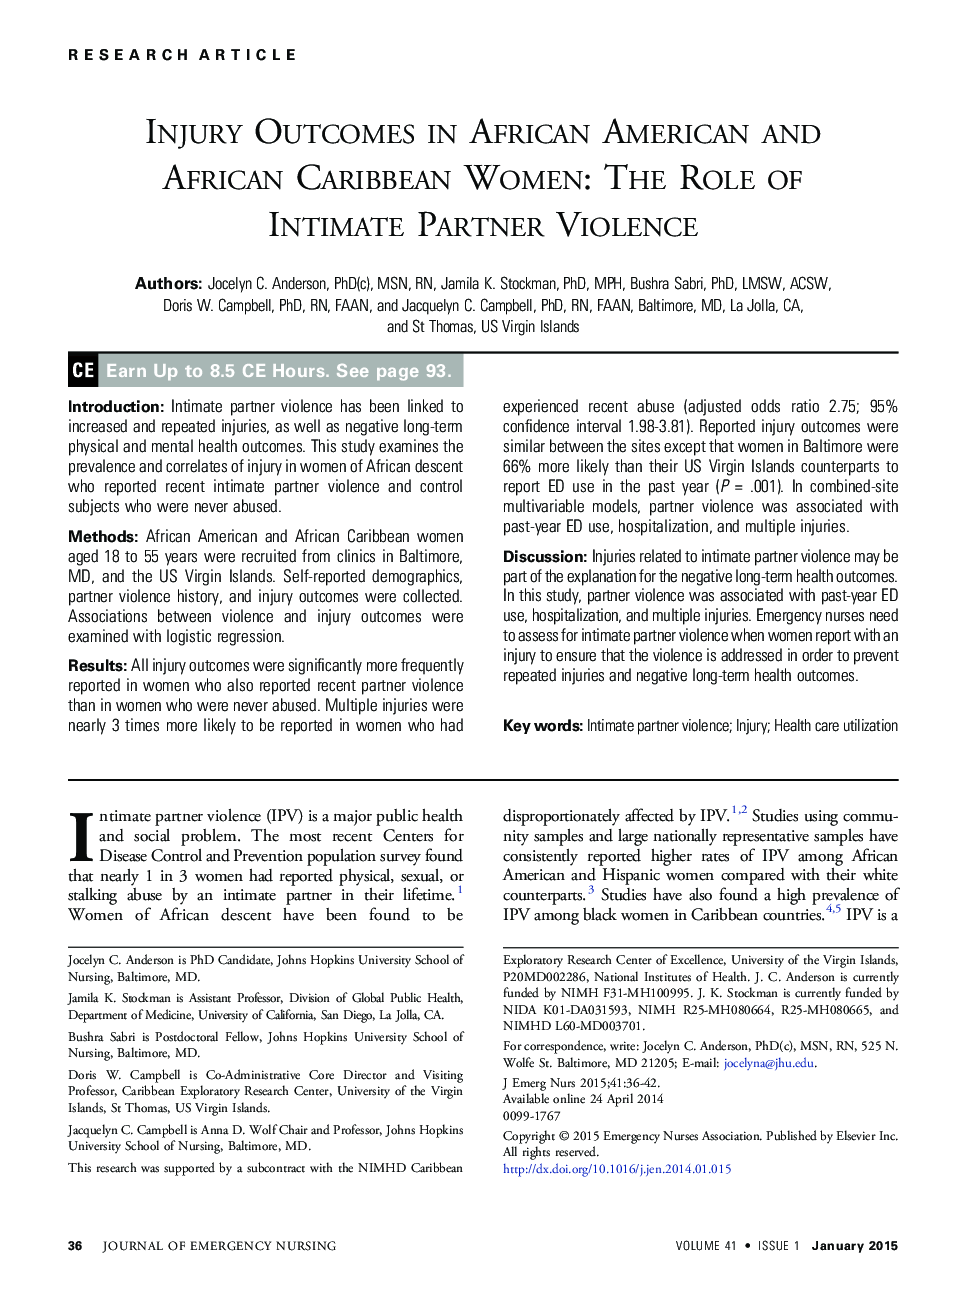 نتایج آسیب در آمریکایی های آفریقایی تبار و زنان کارائیب آفریقایی: نقش خشونت شریک جنسی (اینتیمیت) 